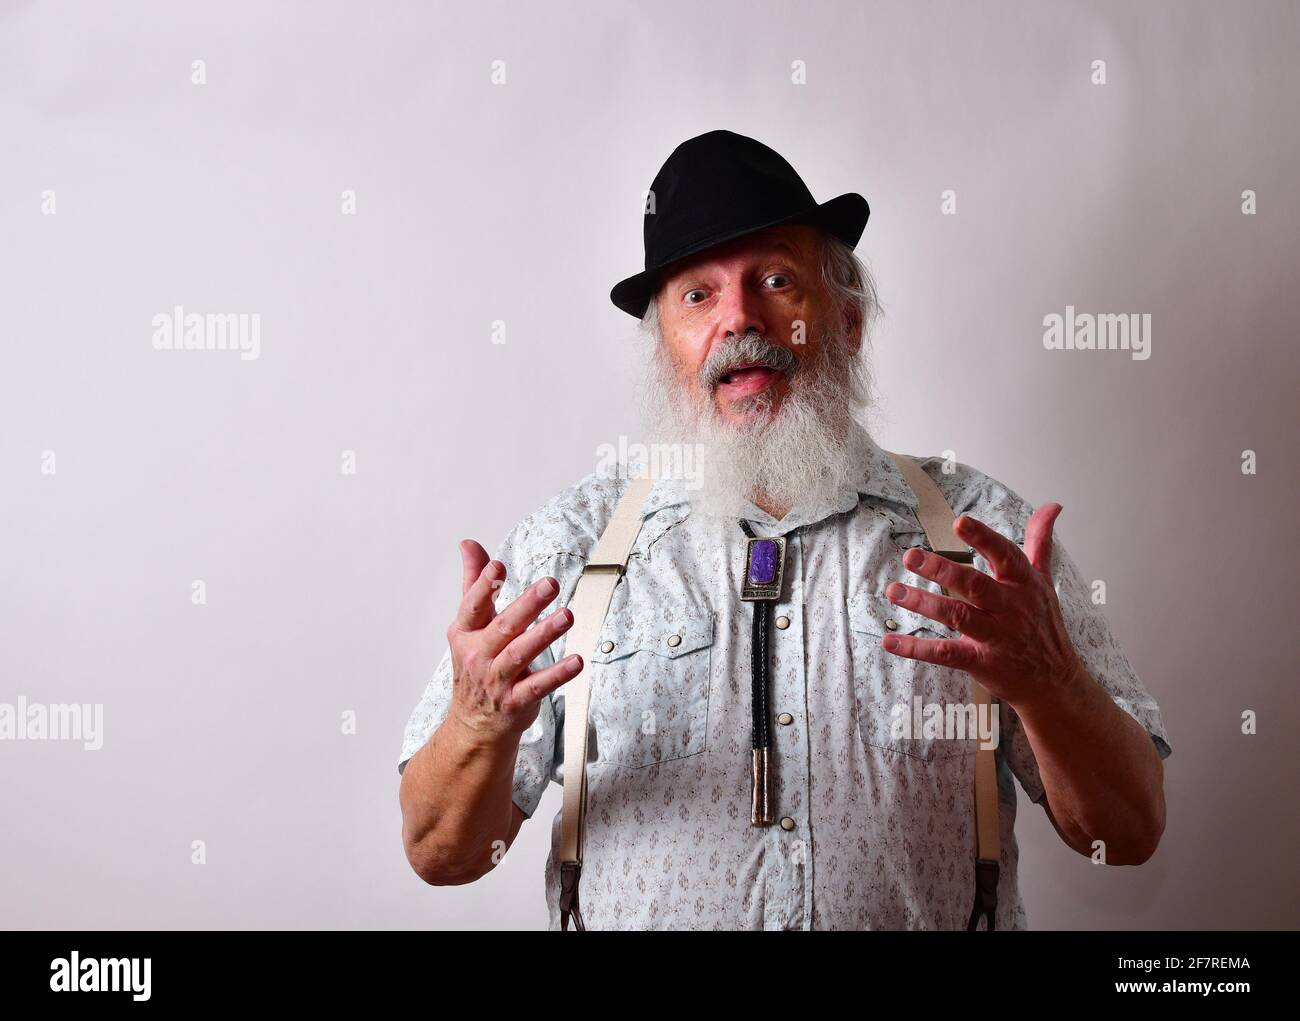 Mâle caucasien âgé barbu avec une expression sérieuse montrant le mécontentement Banque D'Images